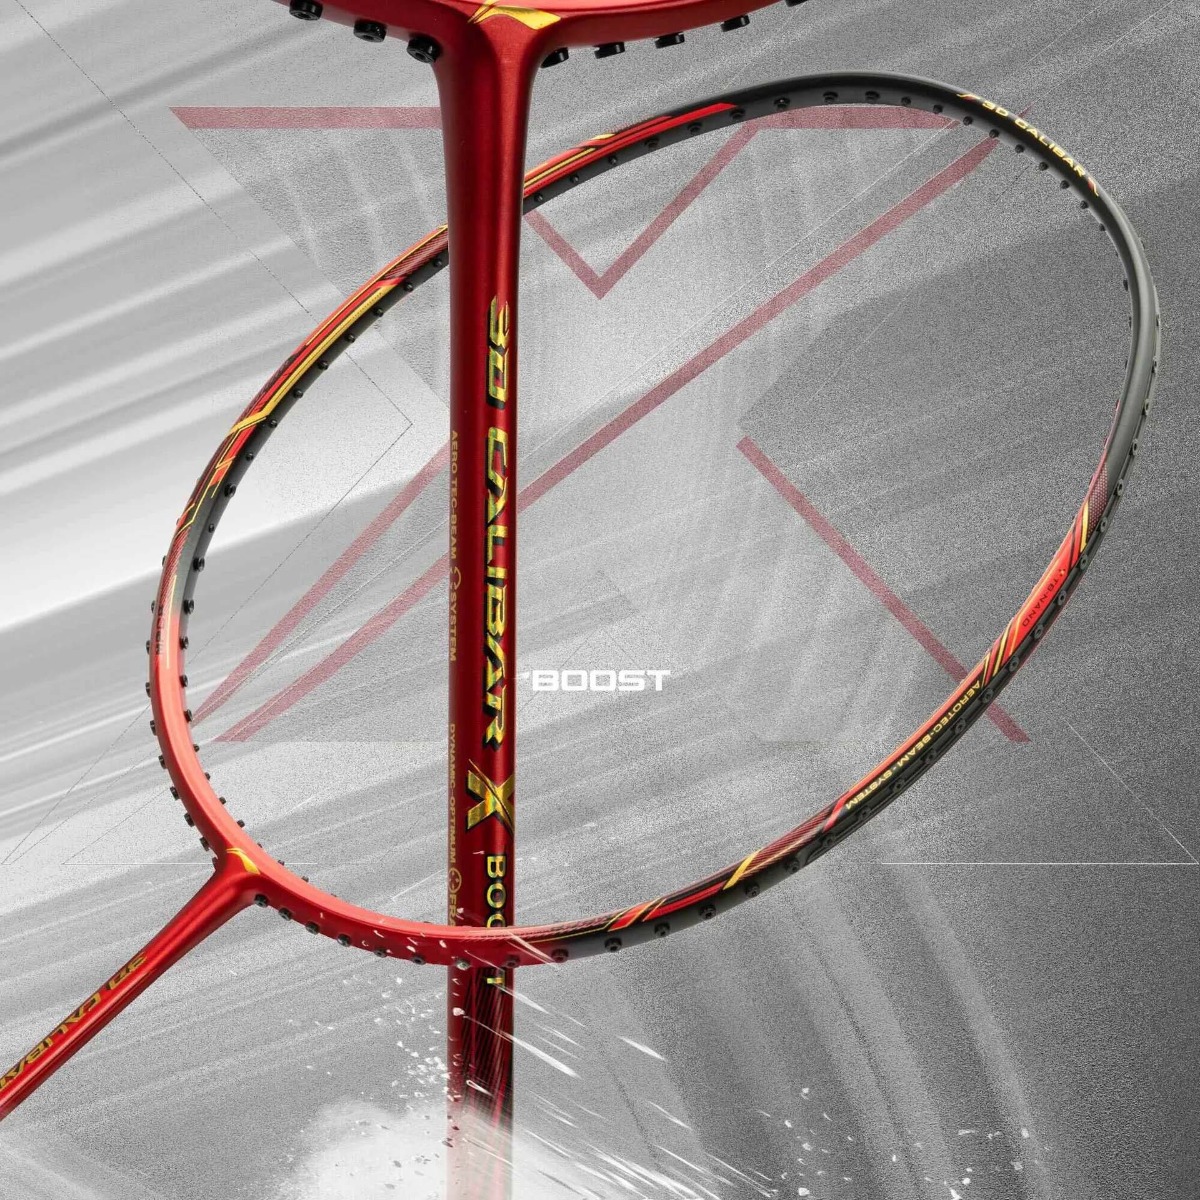 Li-Ning 3D Calibar X Boost Badminton Racket Features MPCF Reinforcing Technology